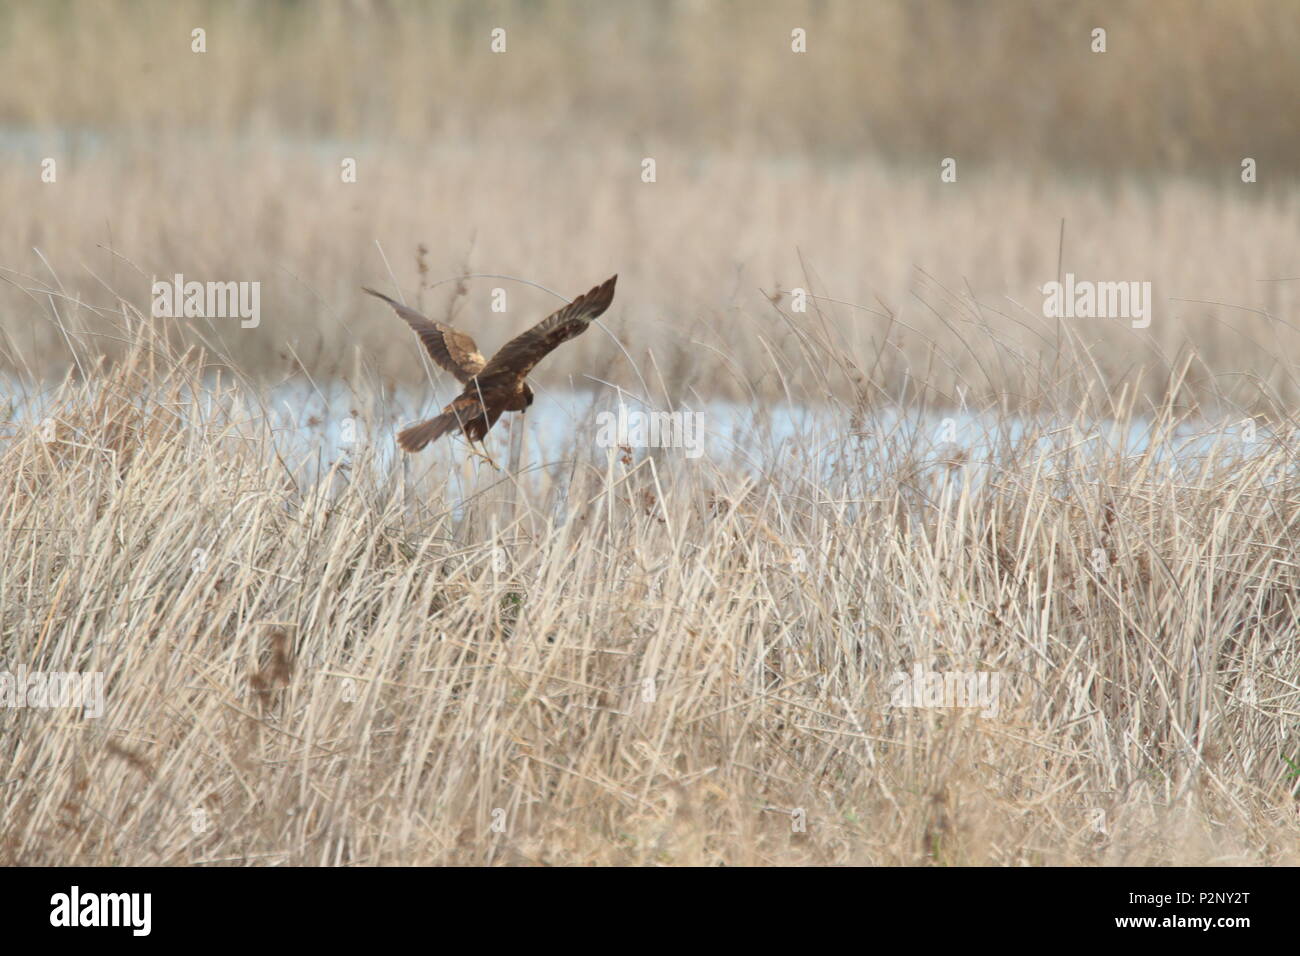 Western marsh harrier (Circus aeruginosus) in Turkey Stock Photo